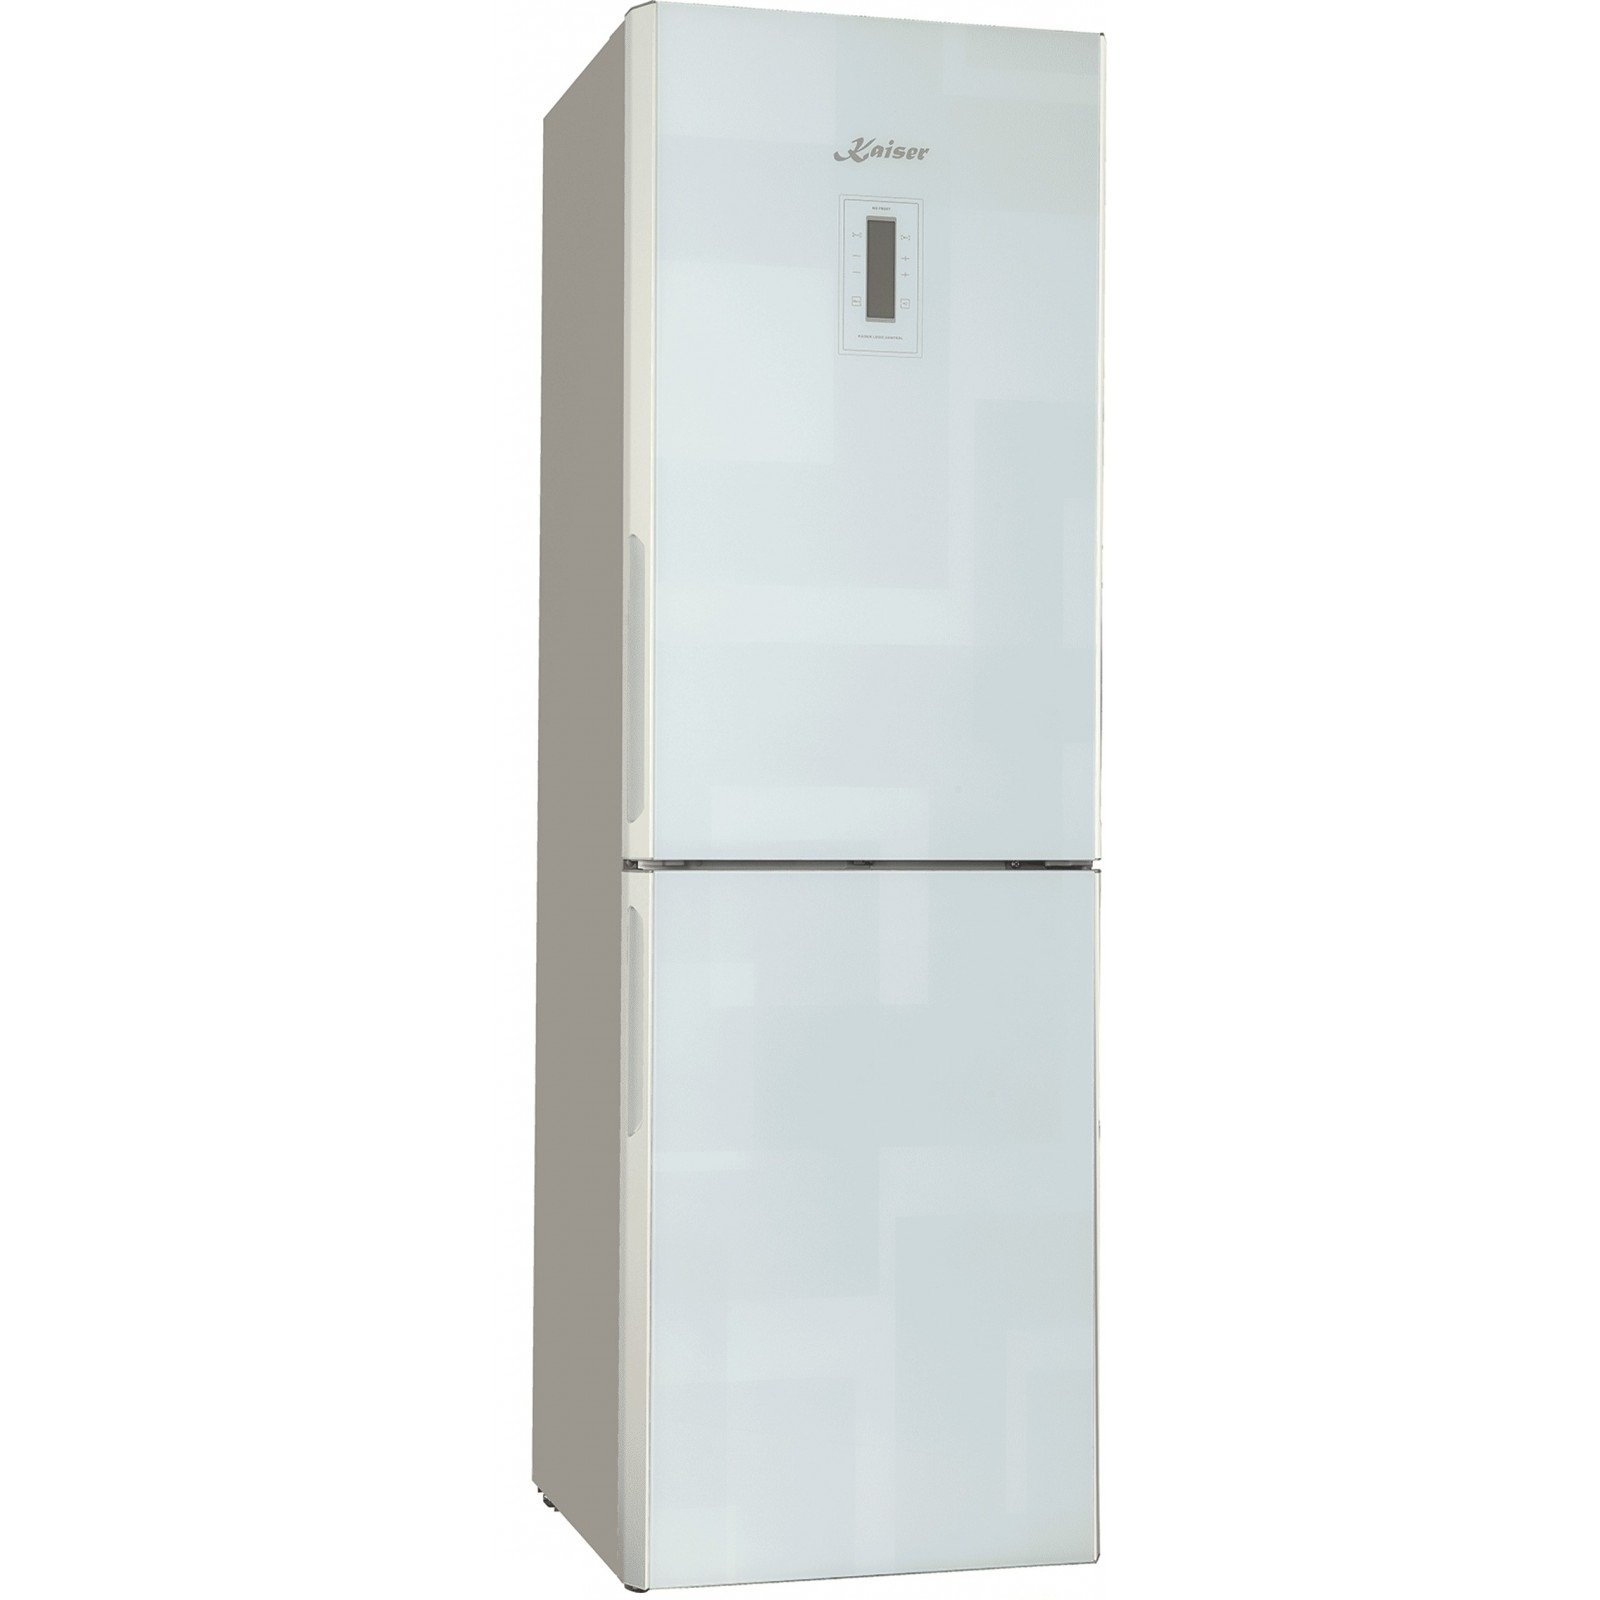 Холодильник Kaiser KK 63205 W фото 1